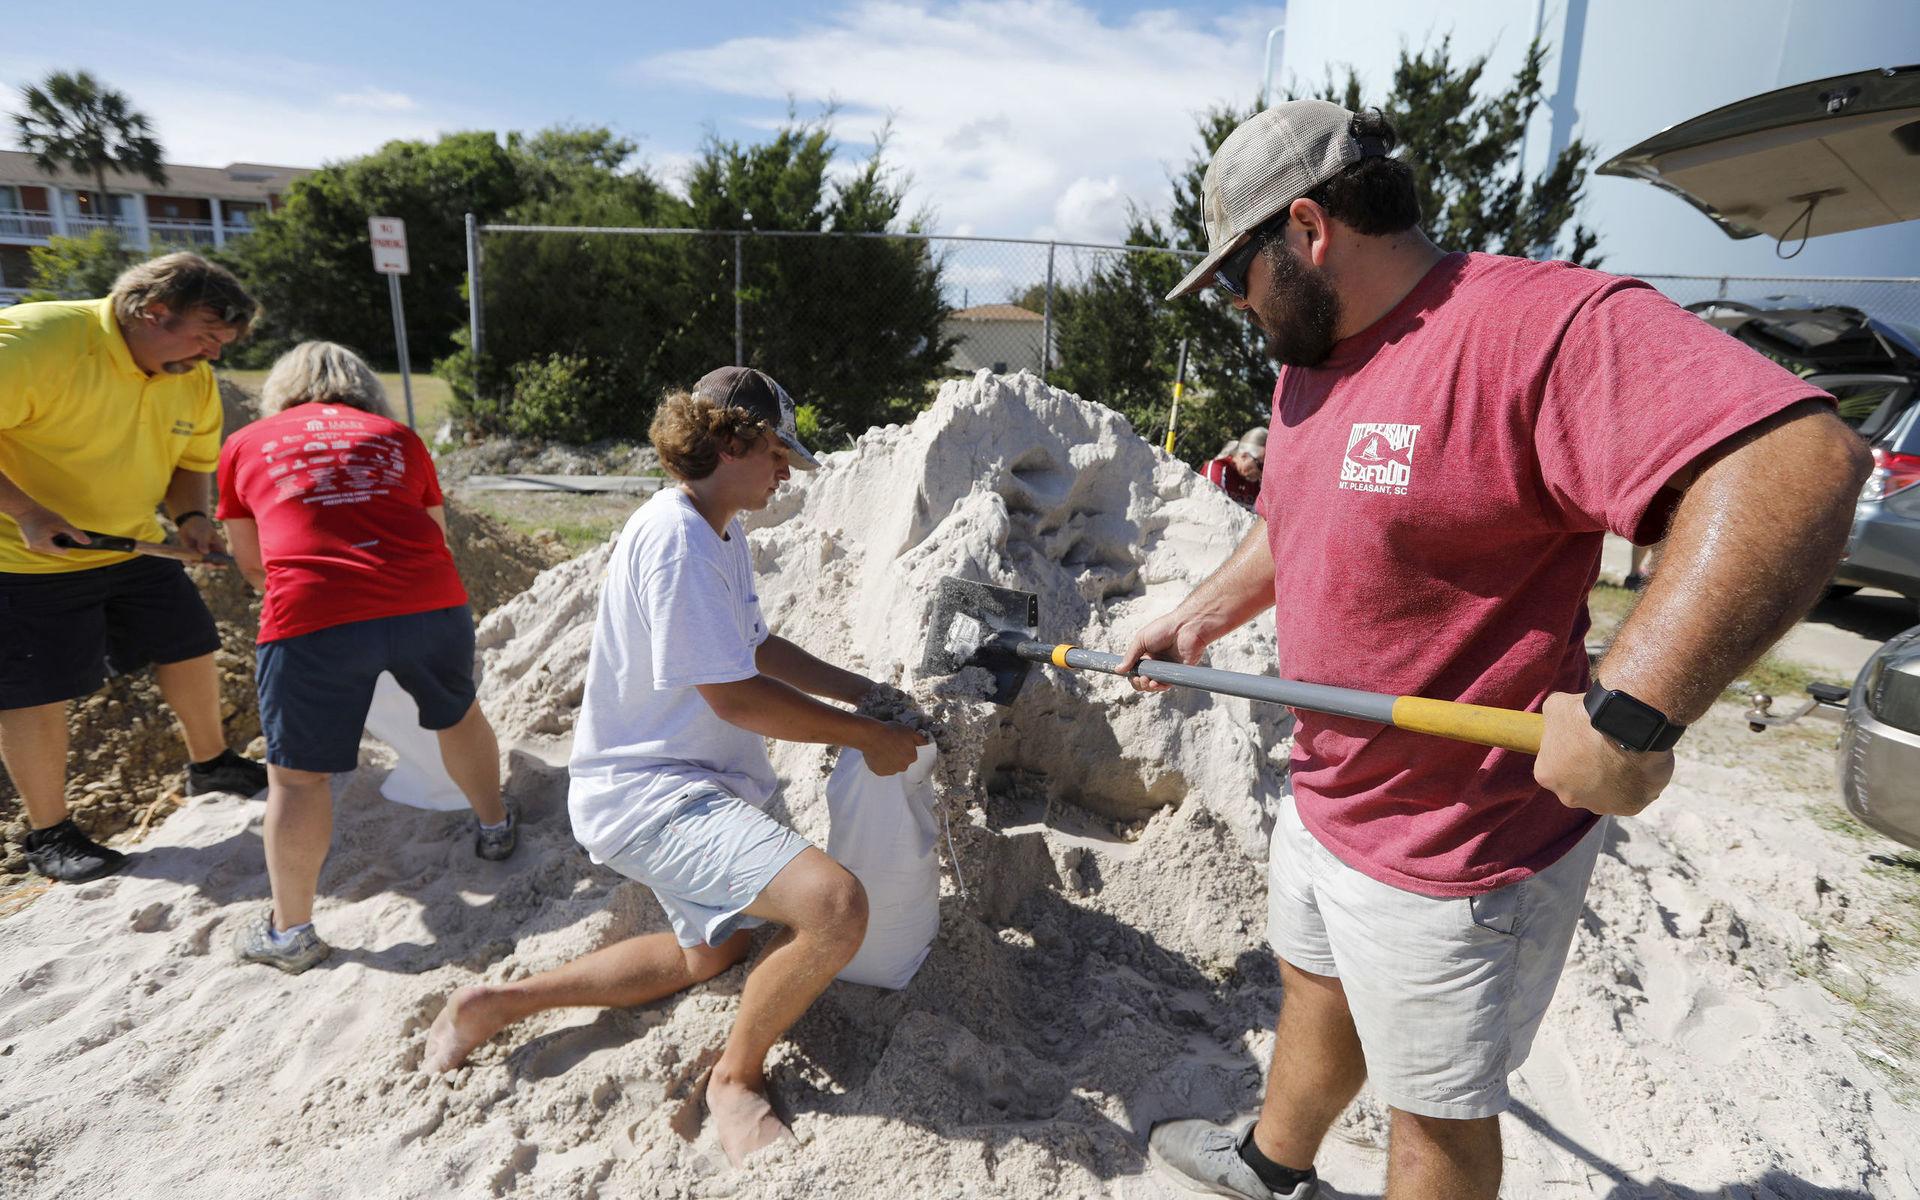  I Isle of Palms ger staden bort gratis sand för de boende att fylla i påsar för att skydda sig mot höga vattenflöden.